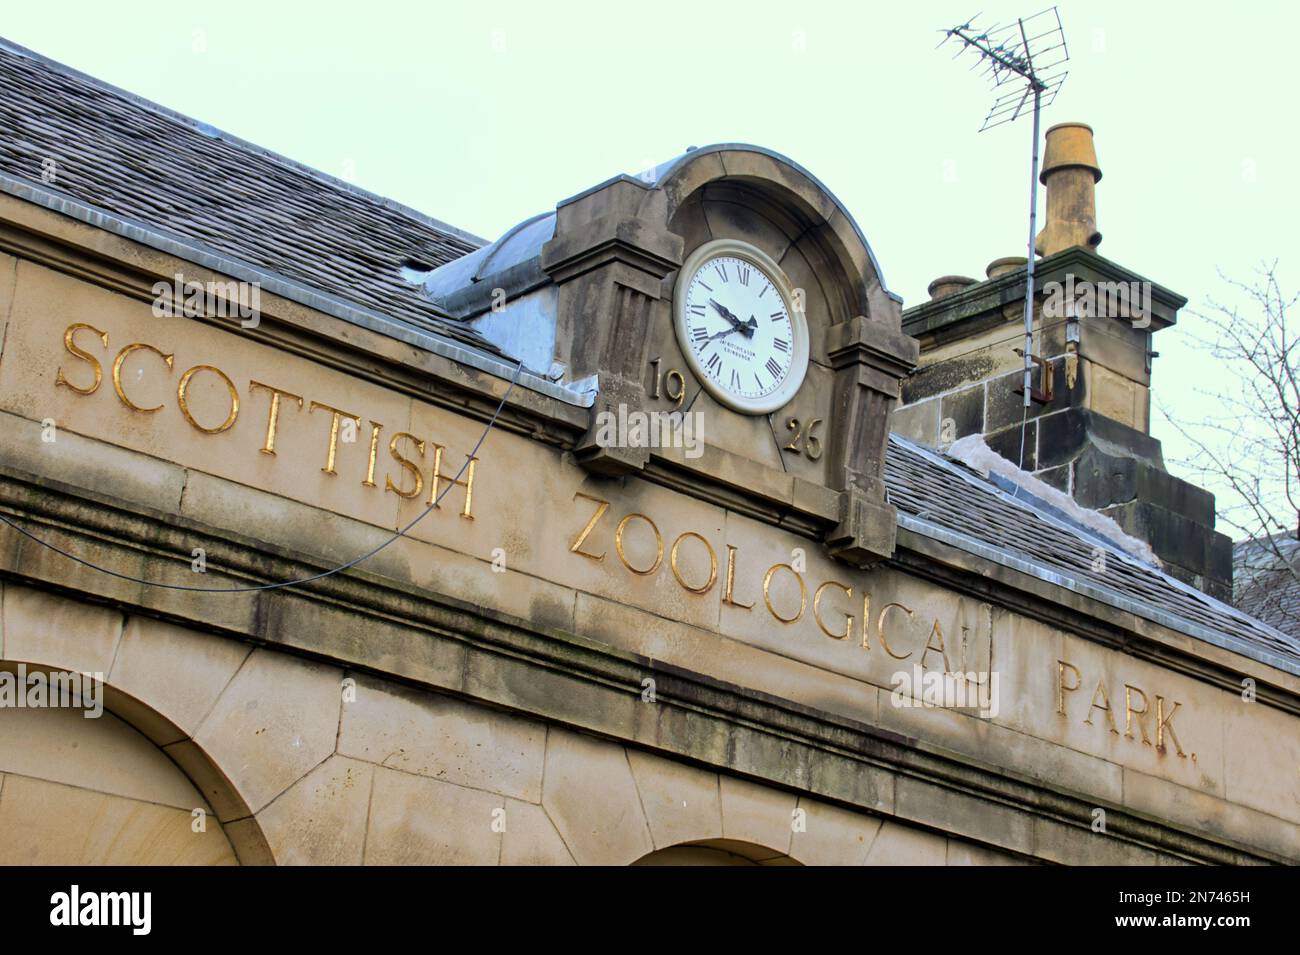 Edinburgh scozia scozzese vittoriano immagini e fotografie stock ad alta  risoluzione - Alamy